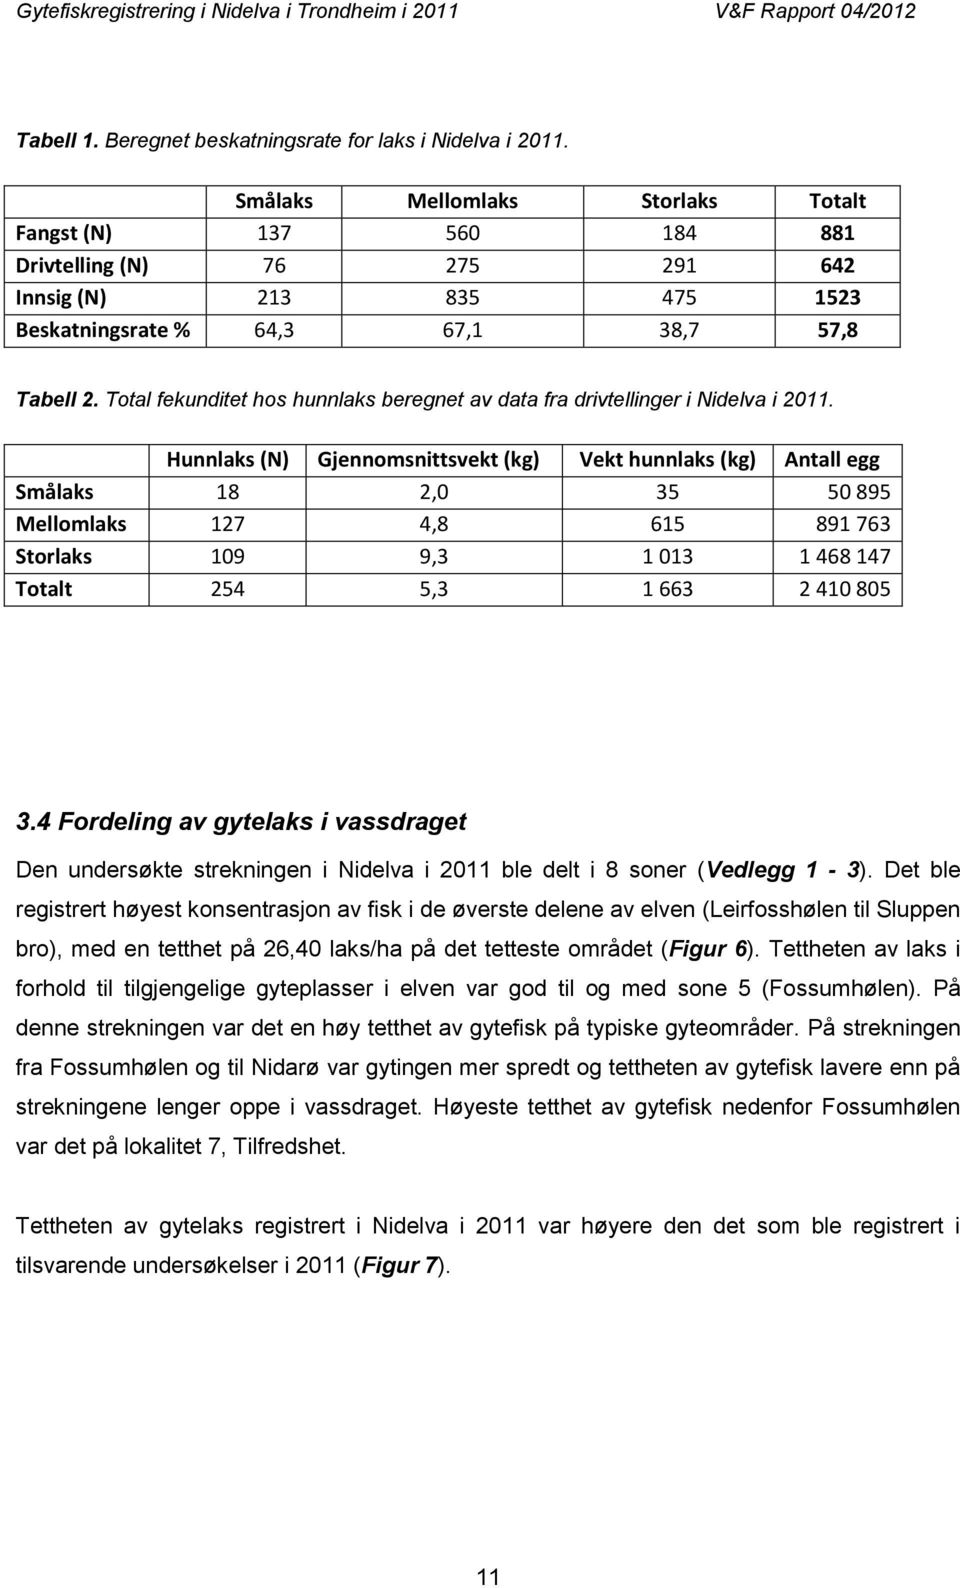 Total fekunditet hos hunnlaks beregnet av data fra drivtellinger i Nidelva i 2011.